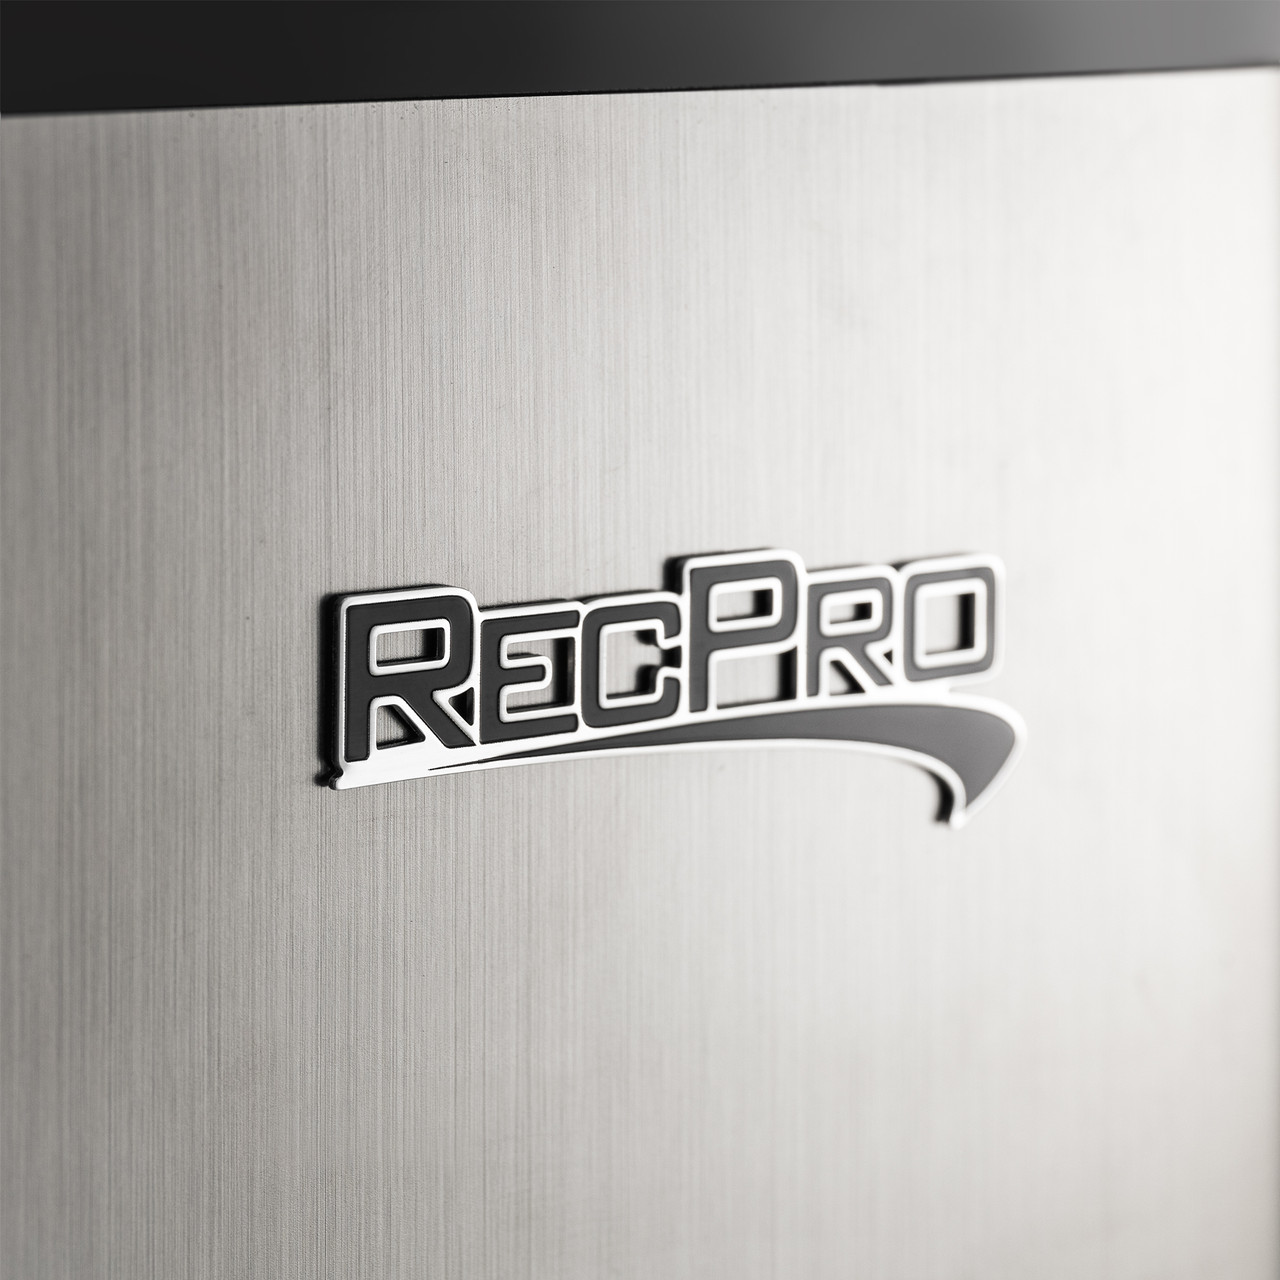 RV Refrigerator 1.7 Cubic Feet 12V Black - RecPro